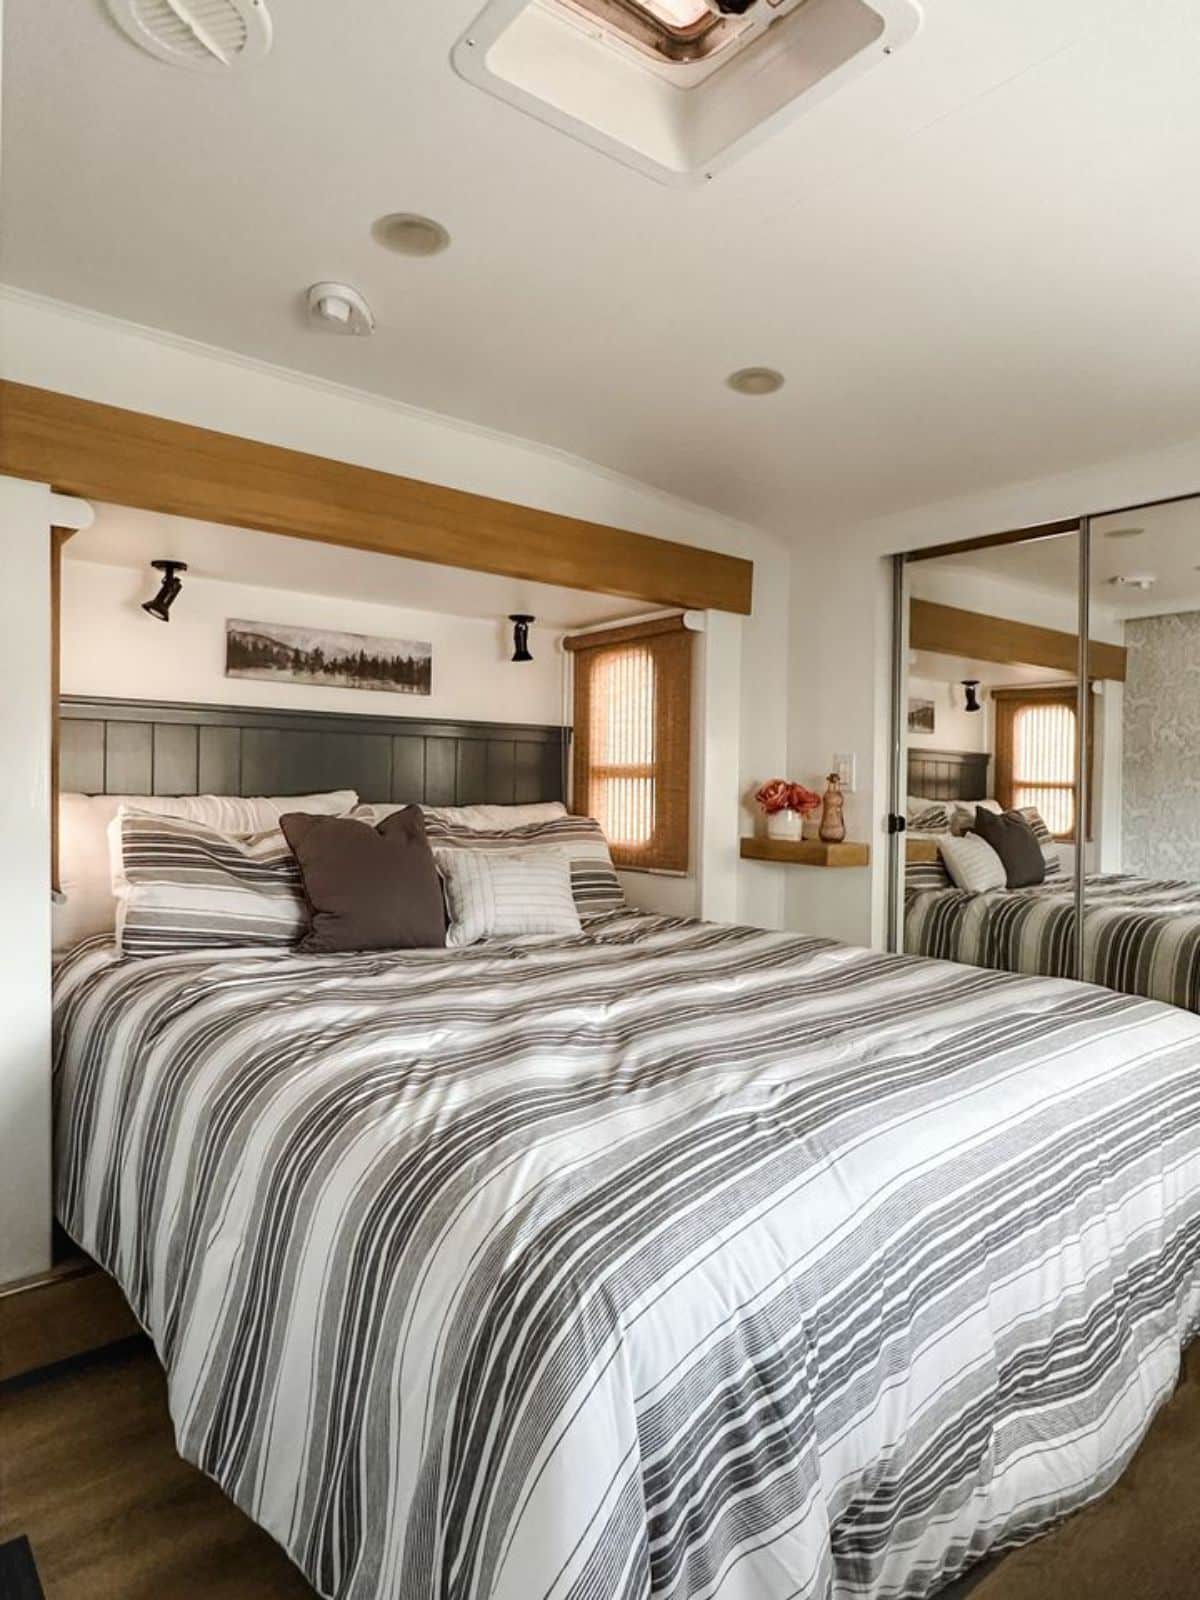 huge comfortable queen bed in bedroom of remodeled RV